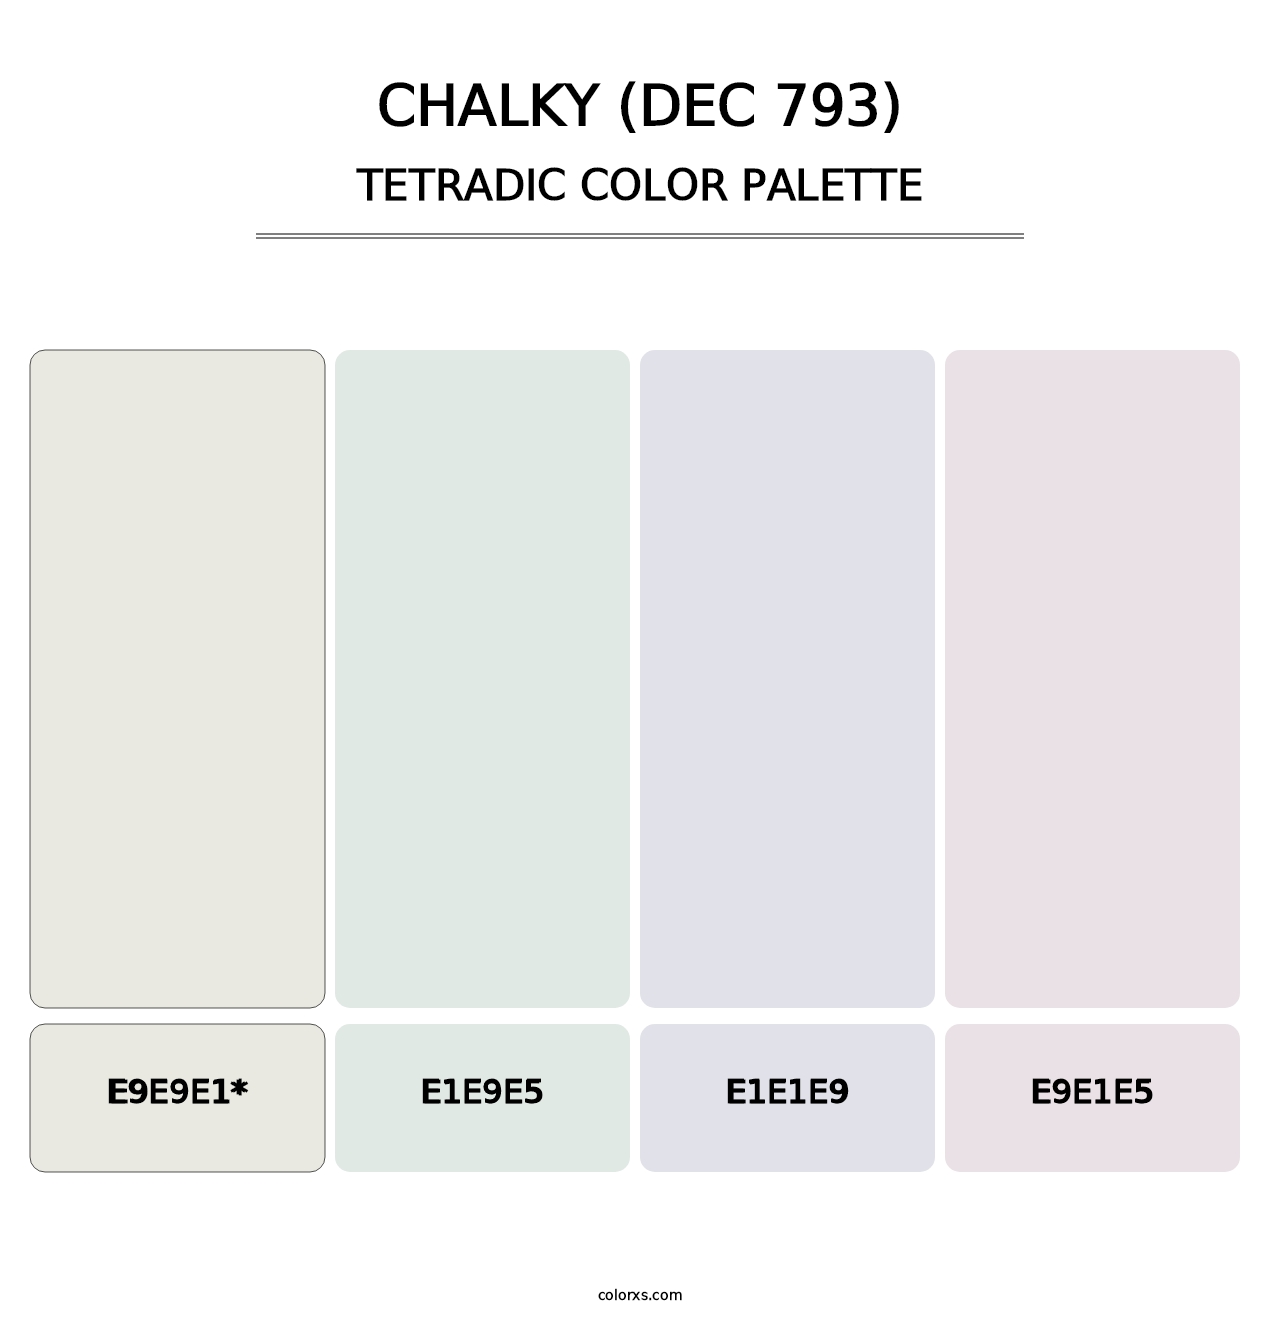 Chalky (DEC 793) - Tetradic Color Palette